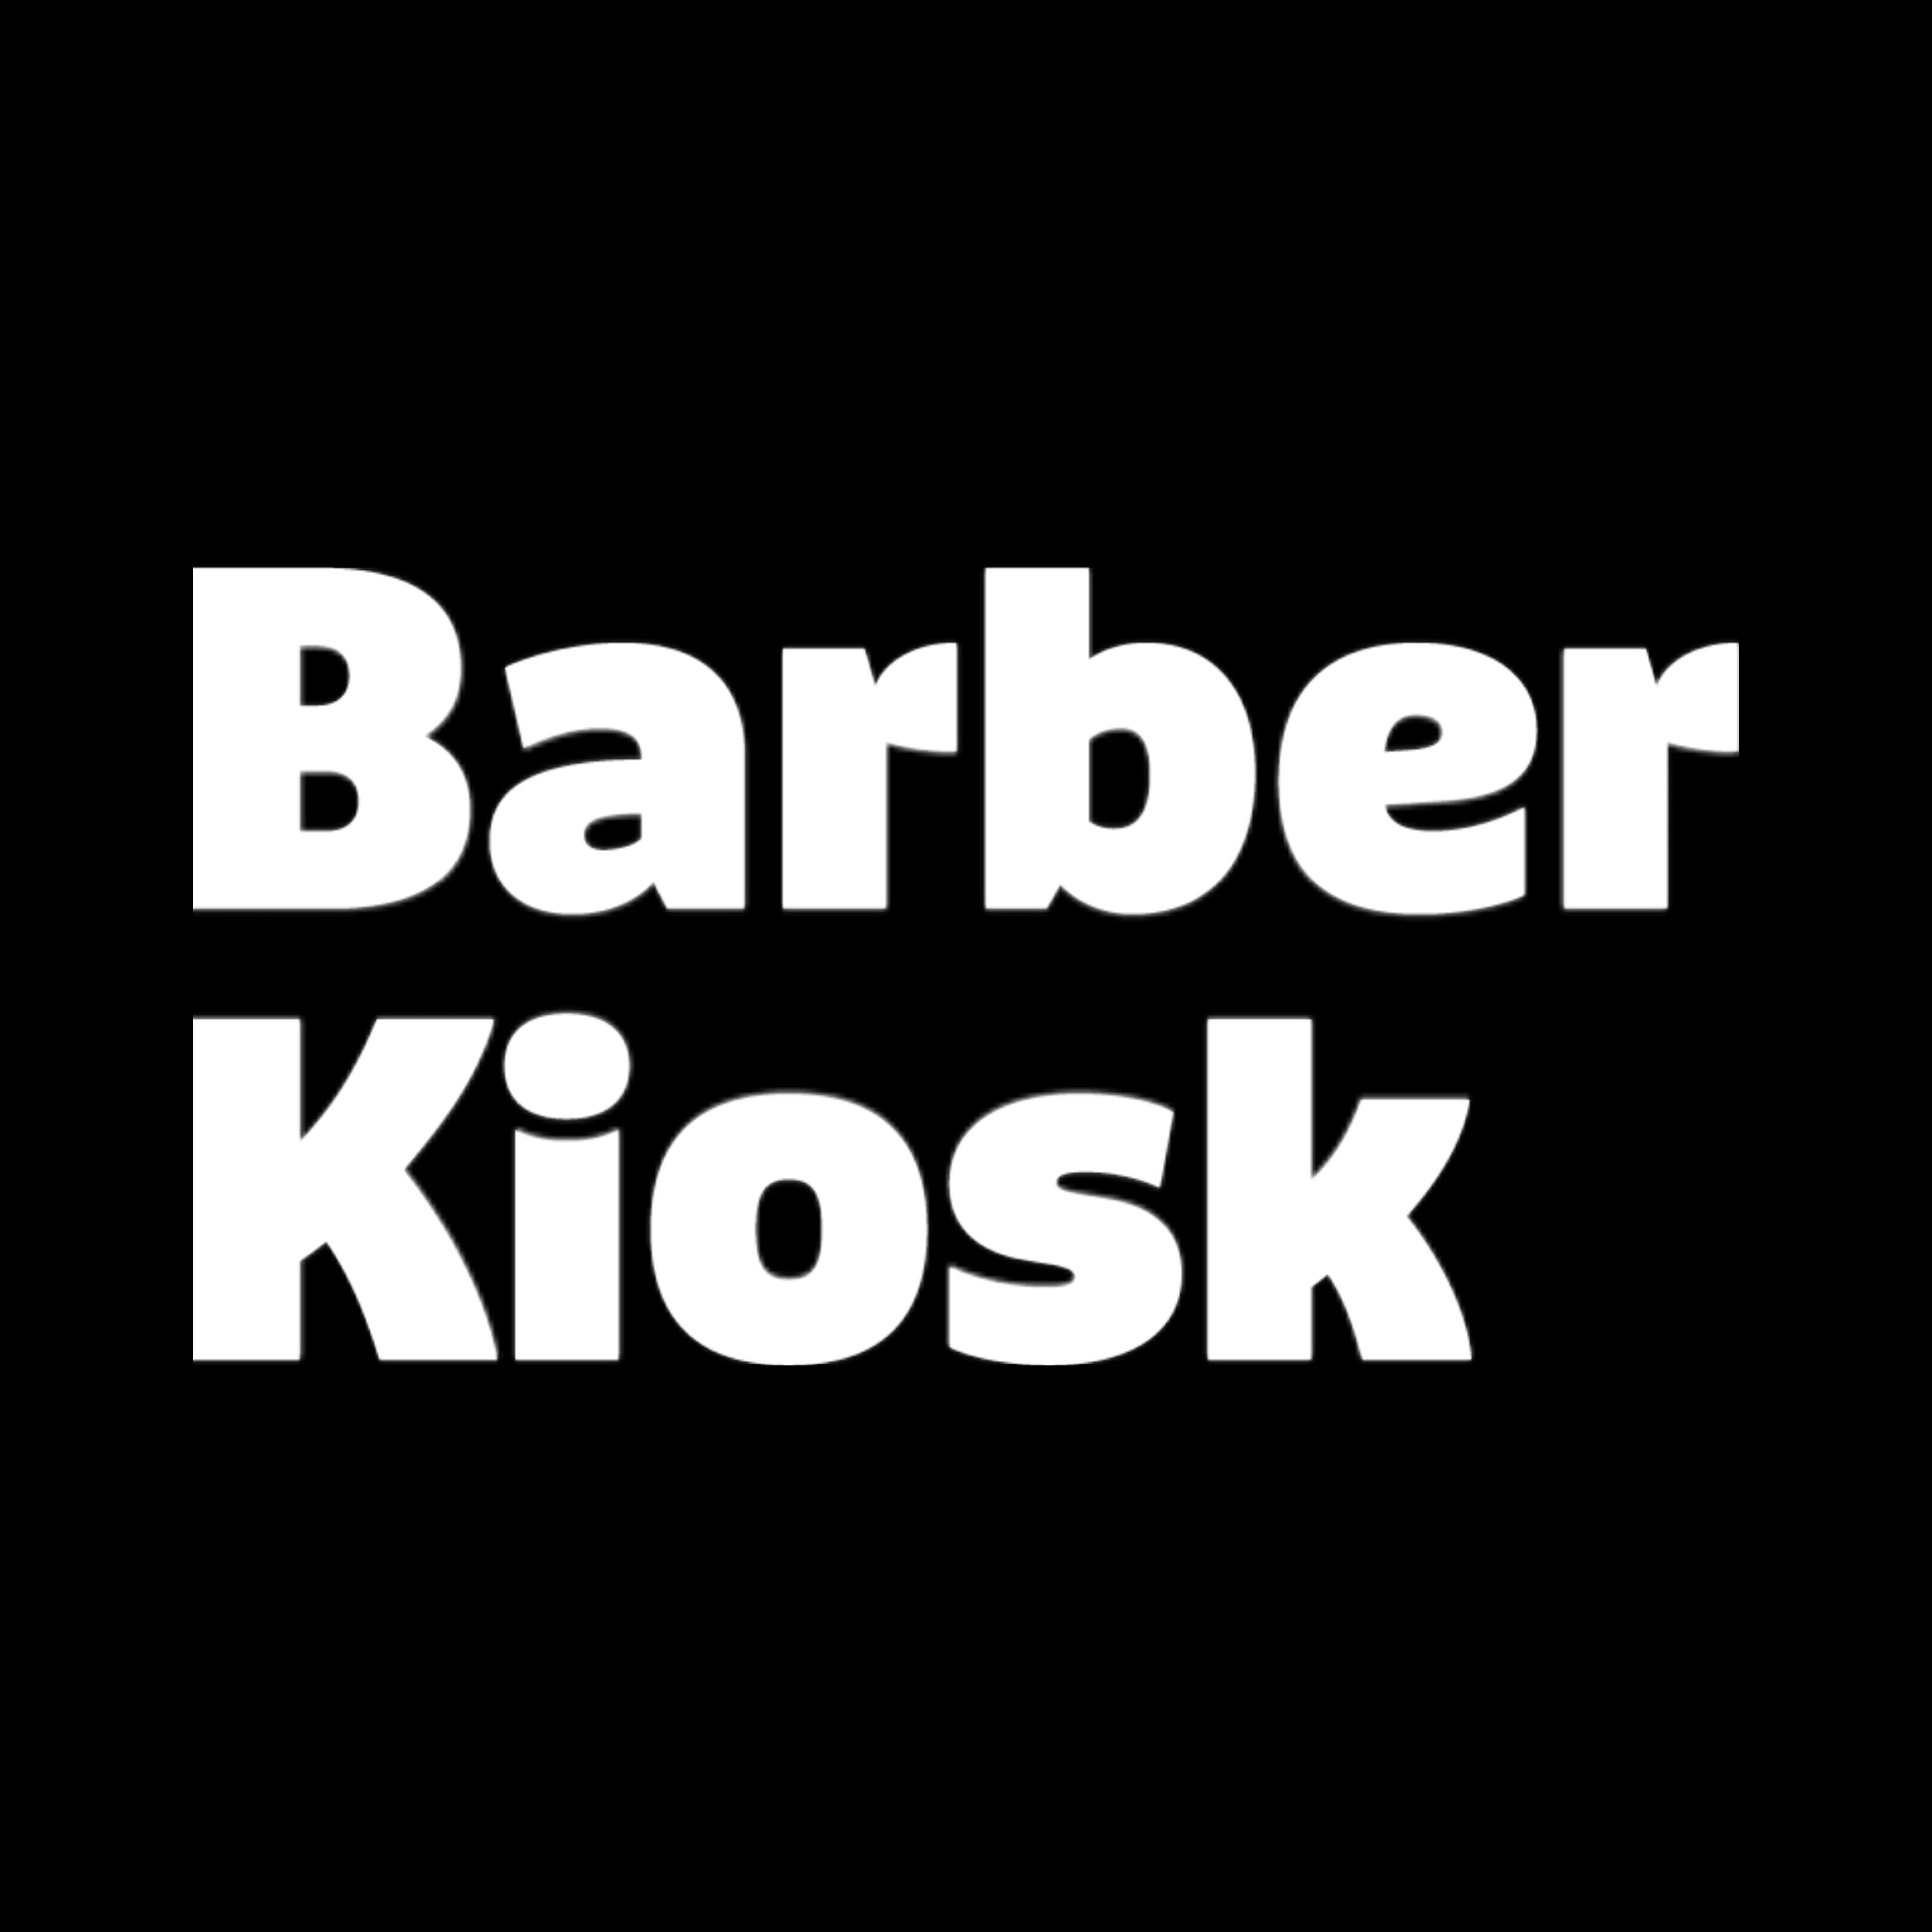 Barber Kiosk